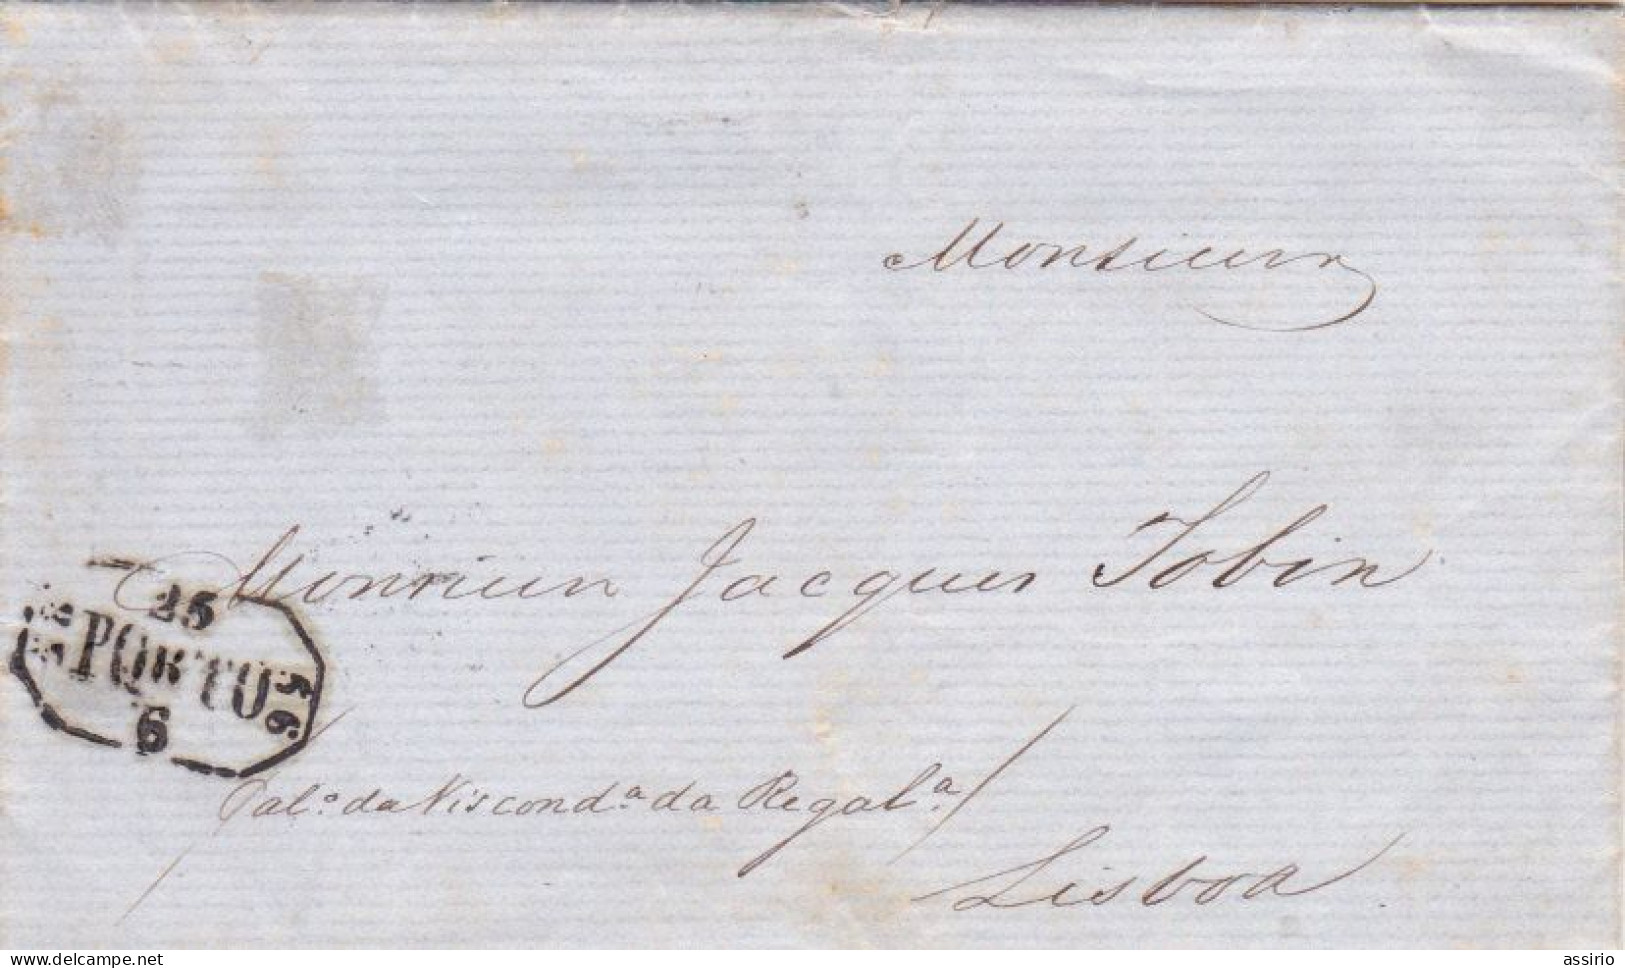 Portugal   7 Cartas  Antigas 5 Enviadas Para Lisboa - ...-1853 Préphilatélie